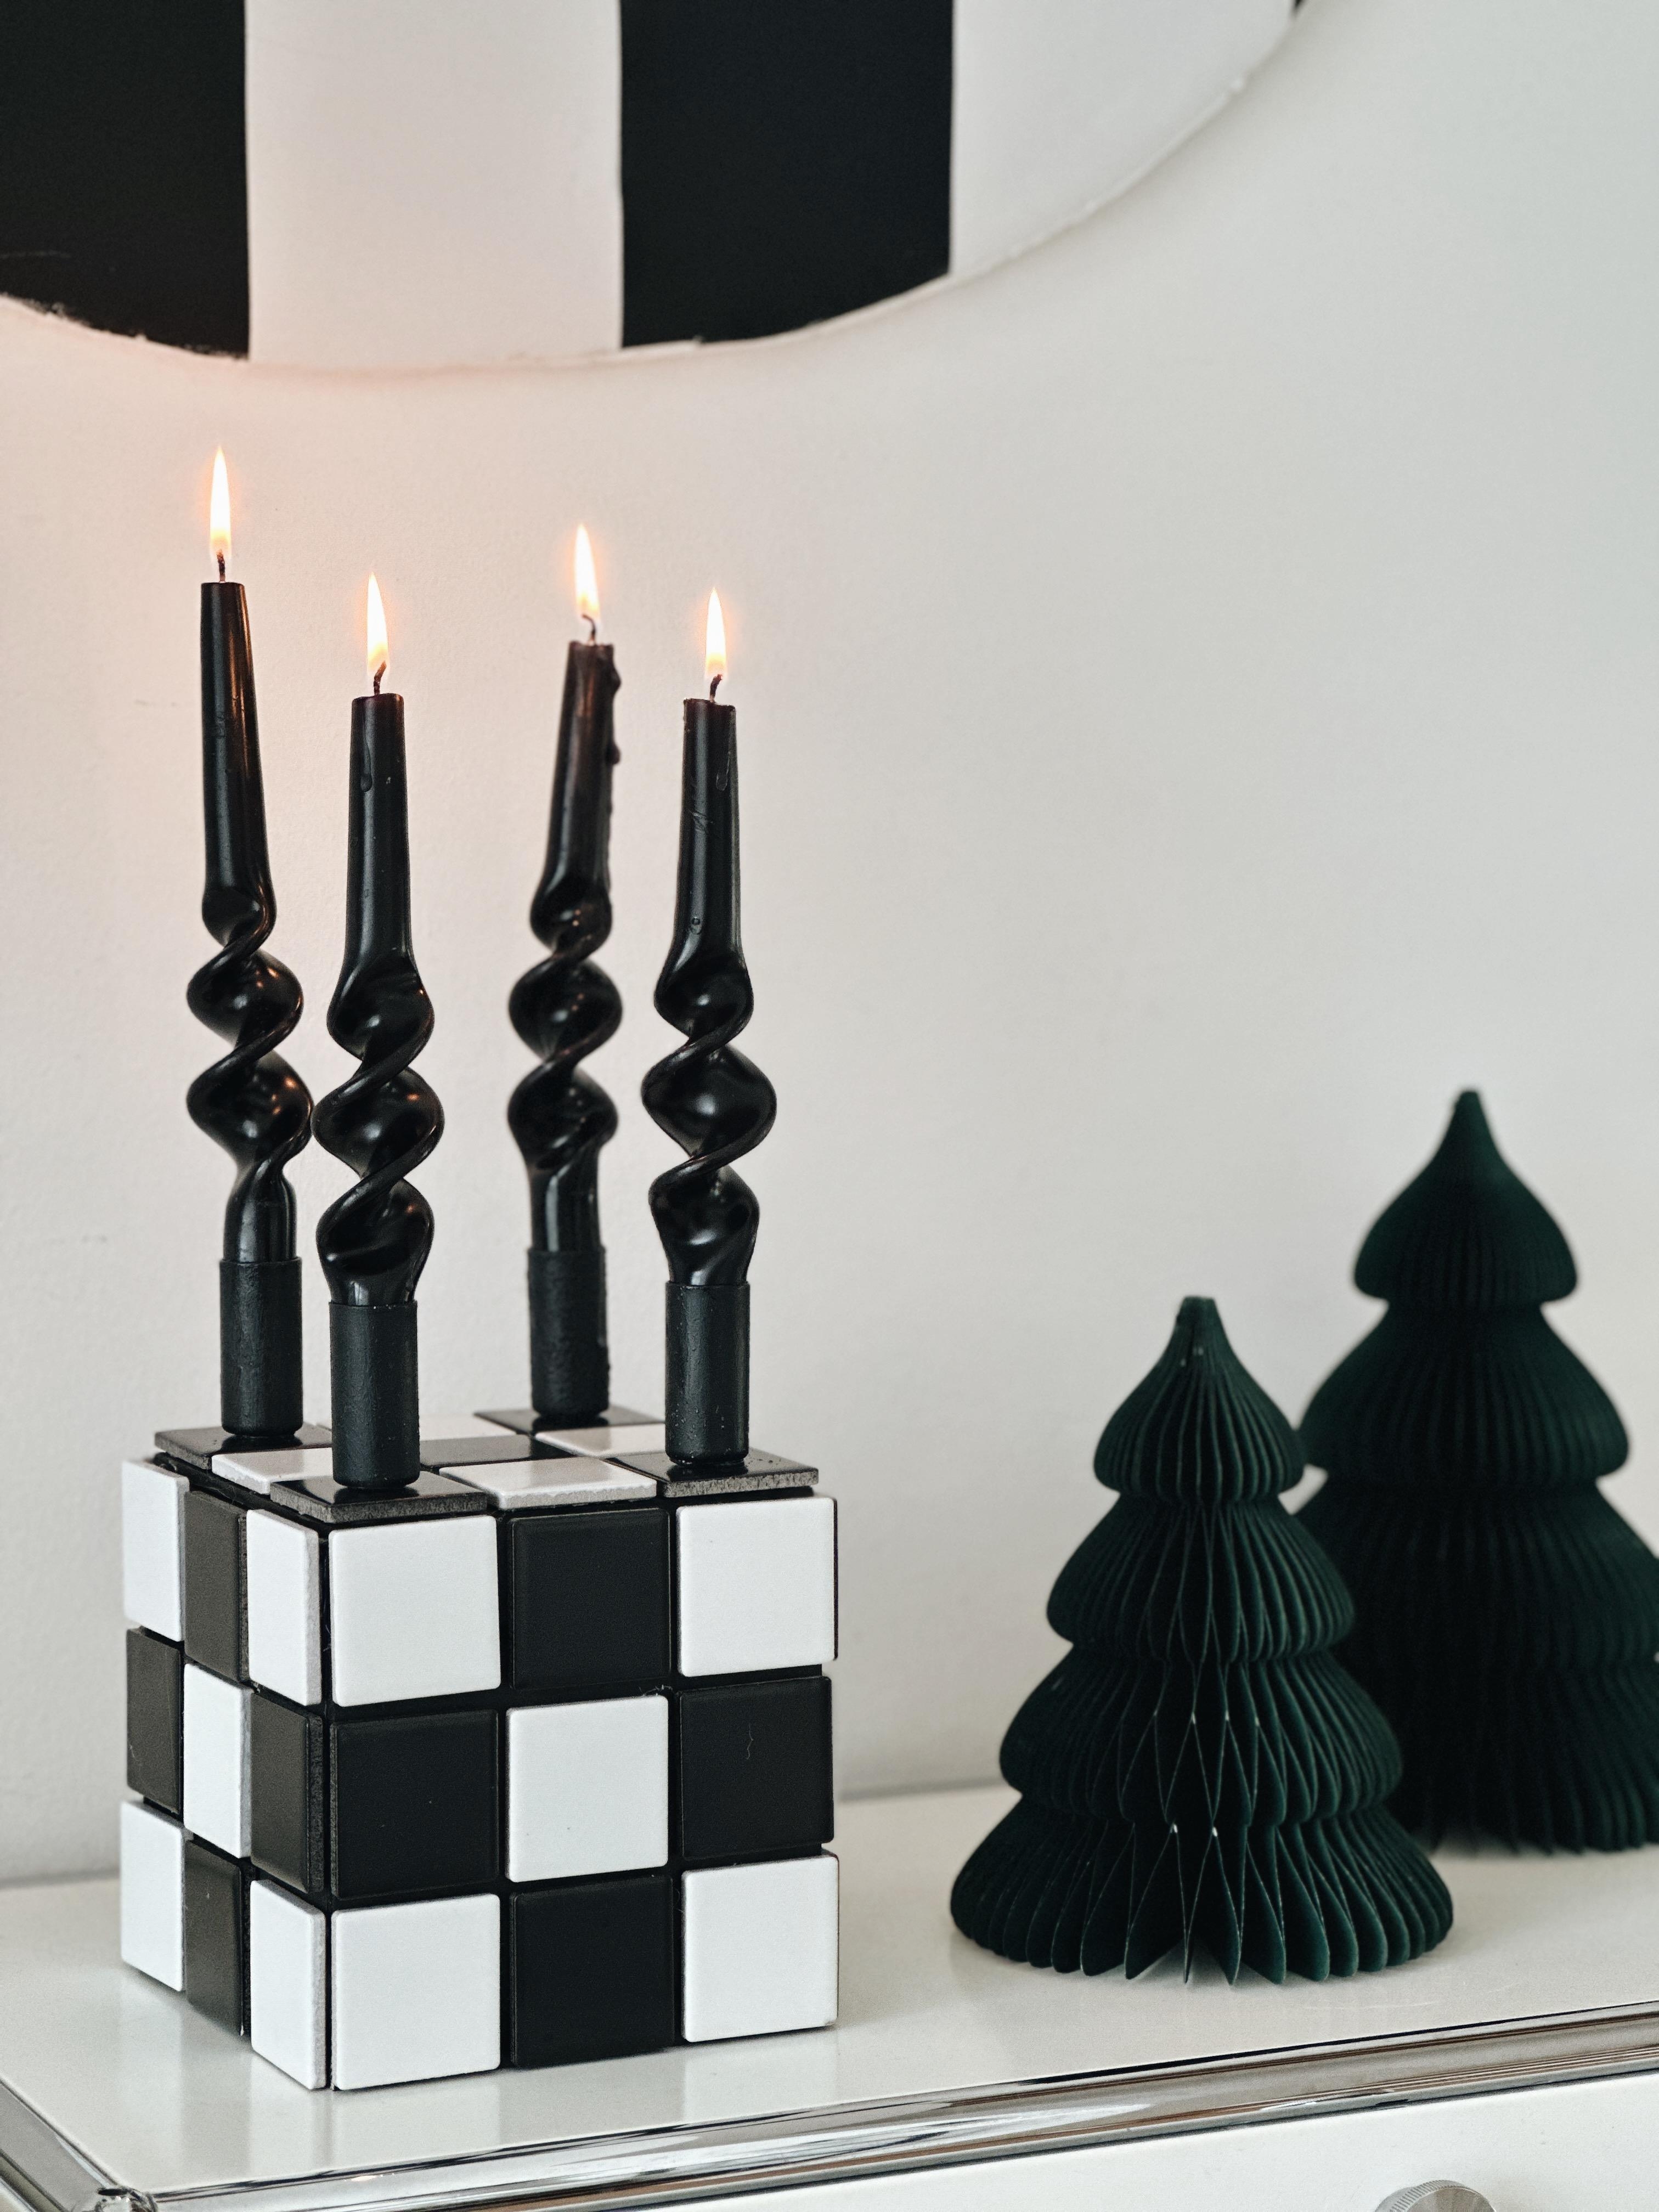 DIY Fliesen Kerzenhalter in #Schwarzweiss 🖤🤍🌲 Auch als minimalistischer #Adventskranz geeignet #adventsdeko #advent